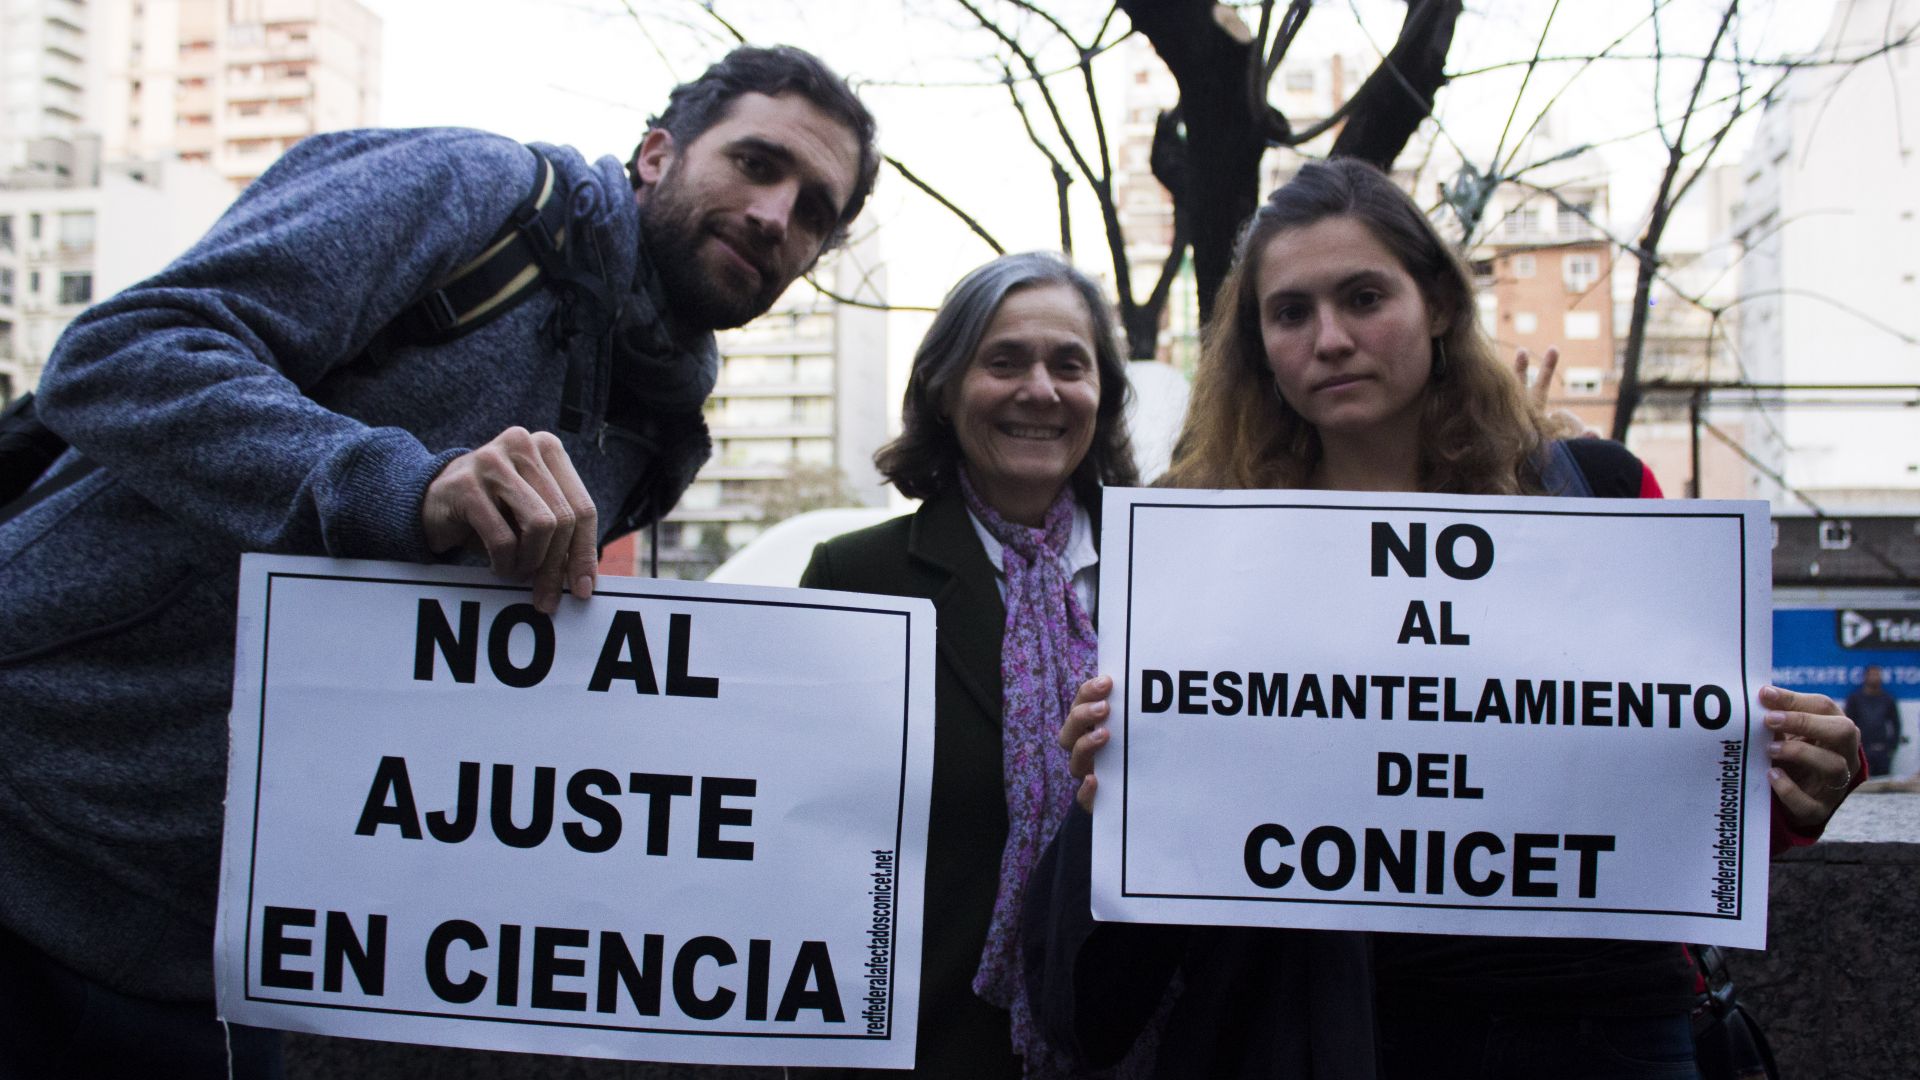 Peligra la continuidad de investigación científica en la Argentina